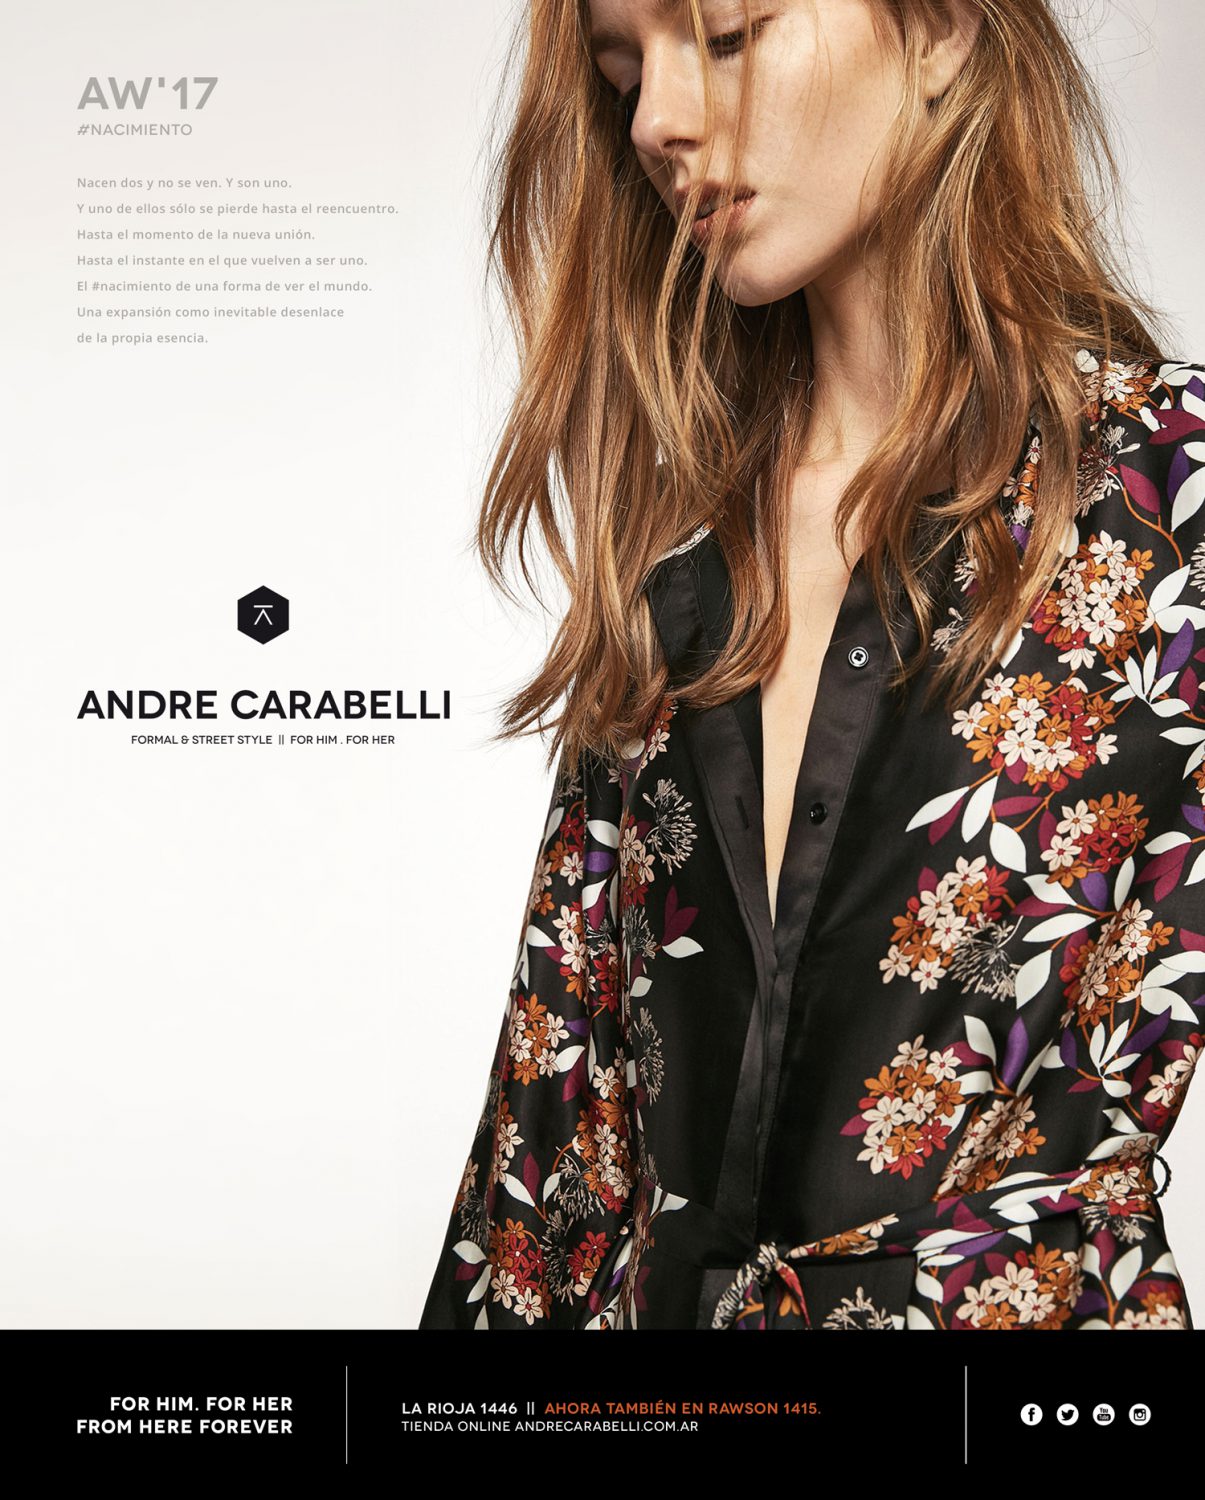 Diseño gráfico y producción material gráfico publicitario para Andre Carabelli by UMM ideas SA